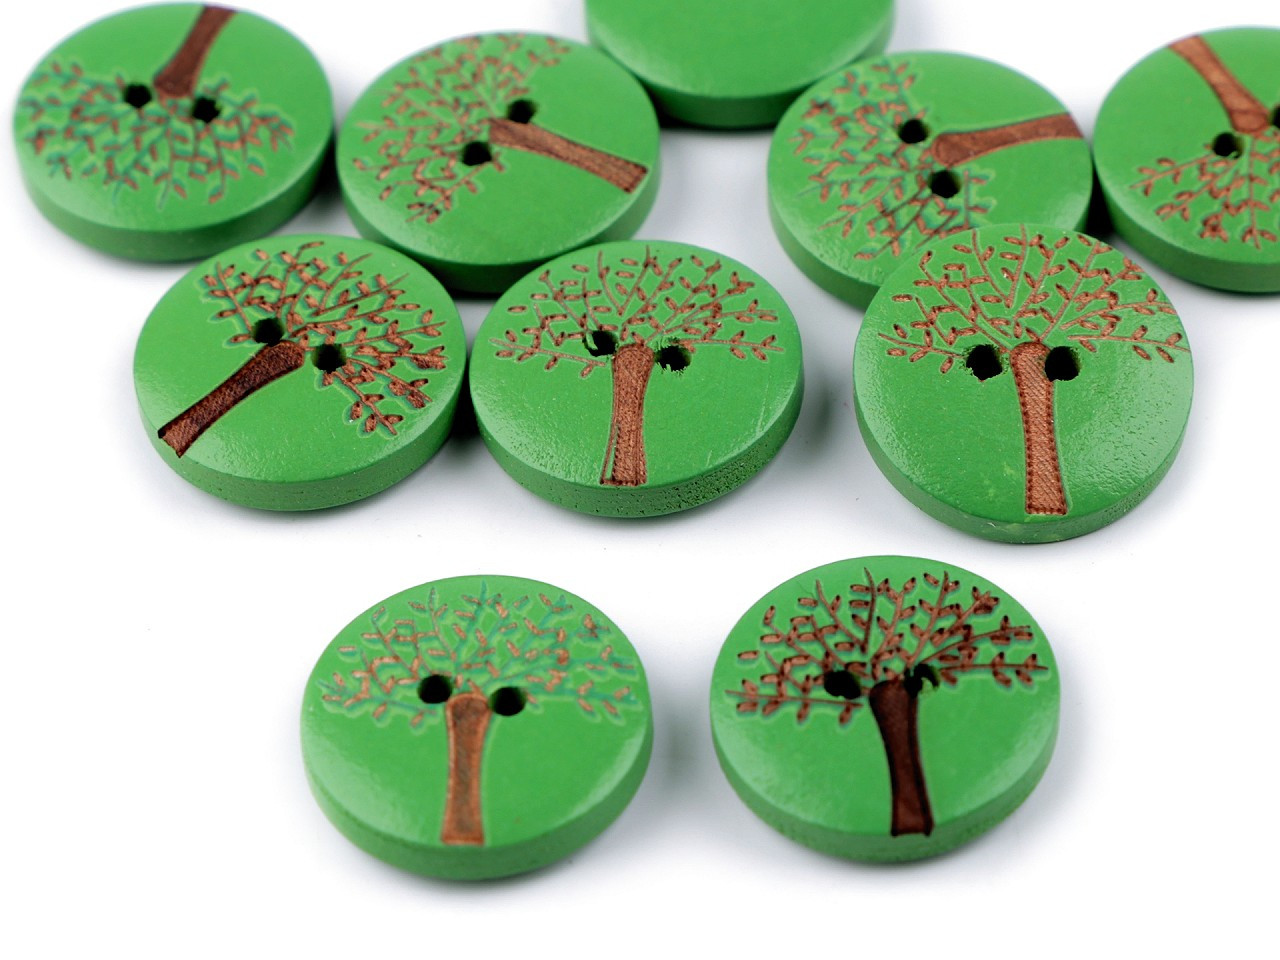 Dřevěný dekorační knoflík strom života, barva 2 zelená lakované